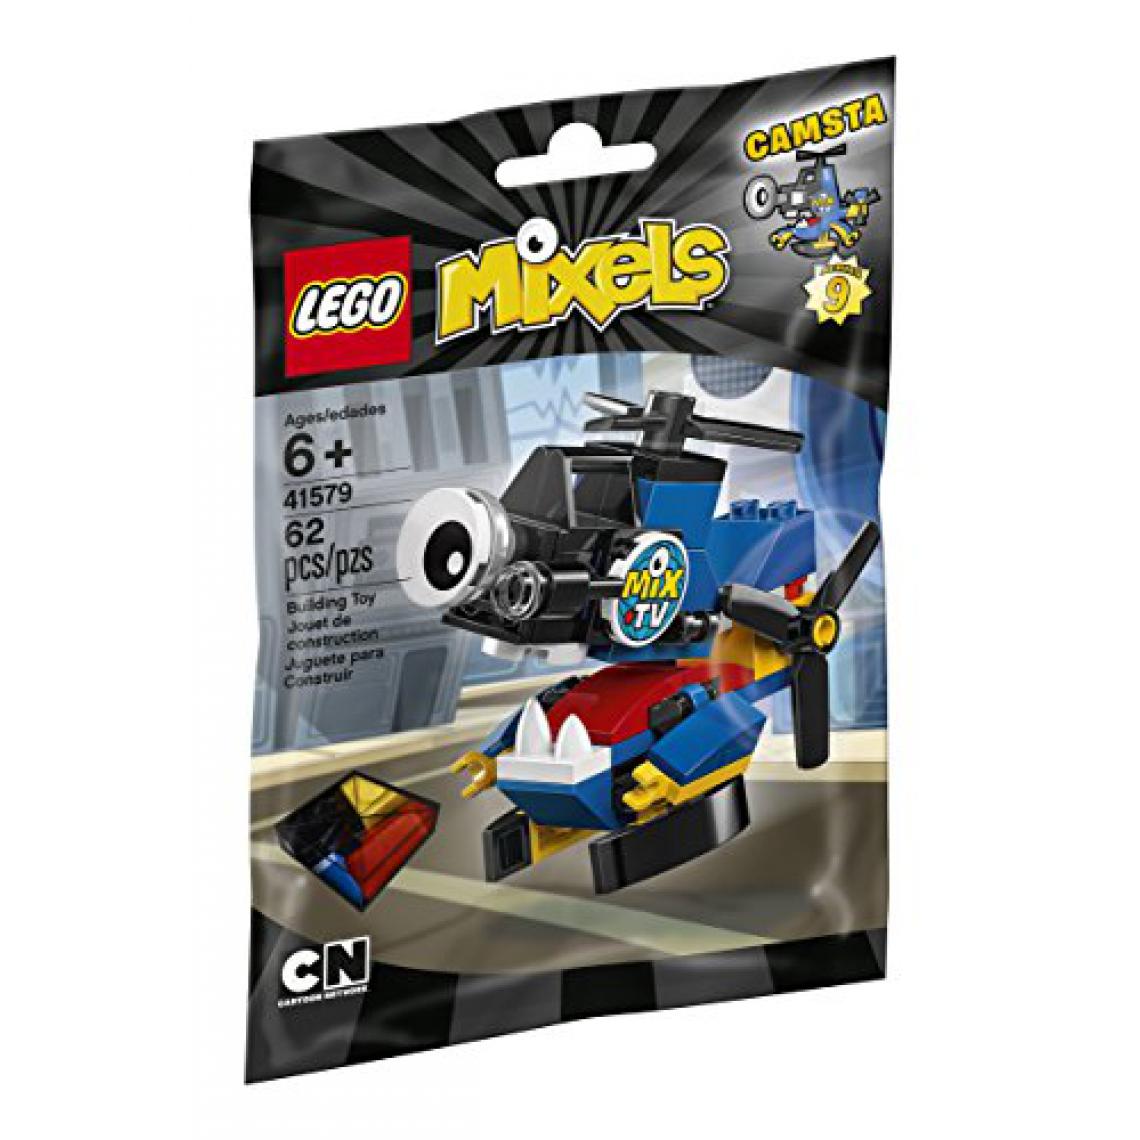 Lego - LEgO Mixels 41579 Kit de construction camsta (62 pièces) - Briques et blocs